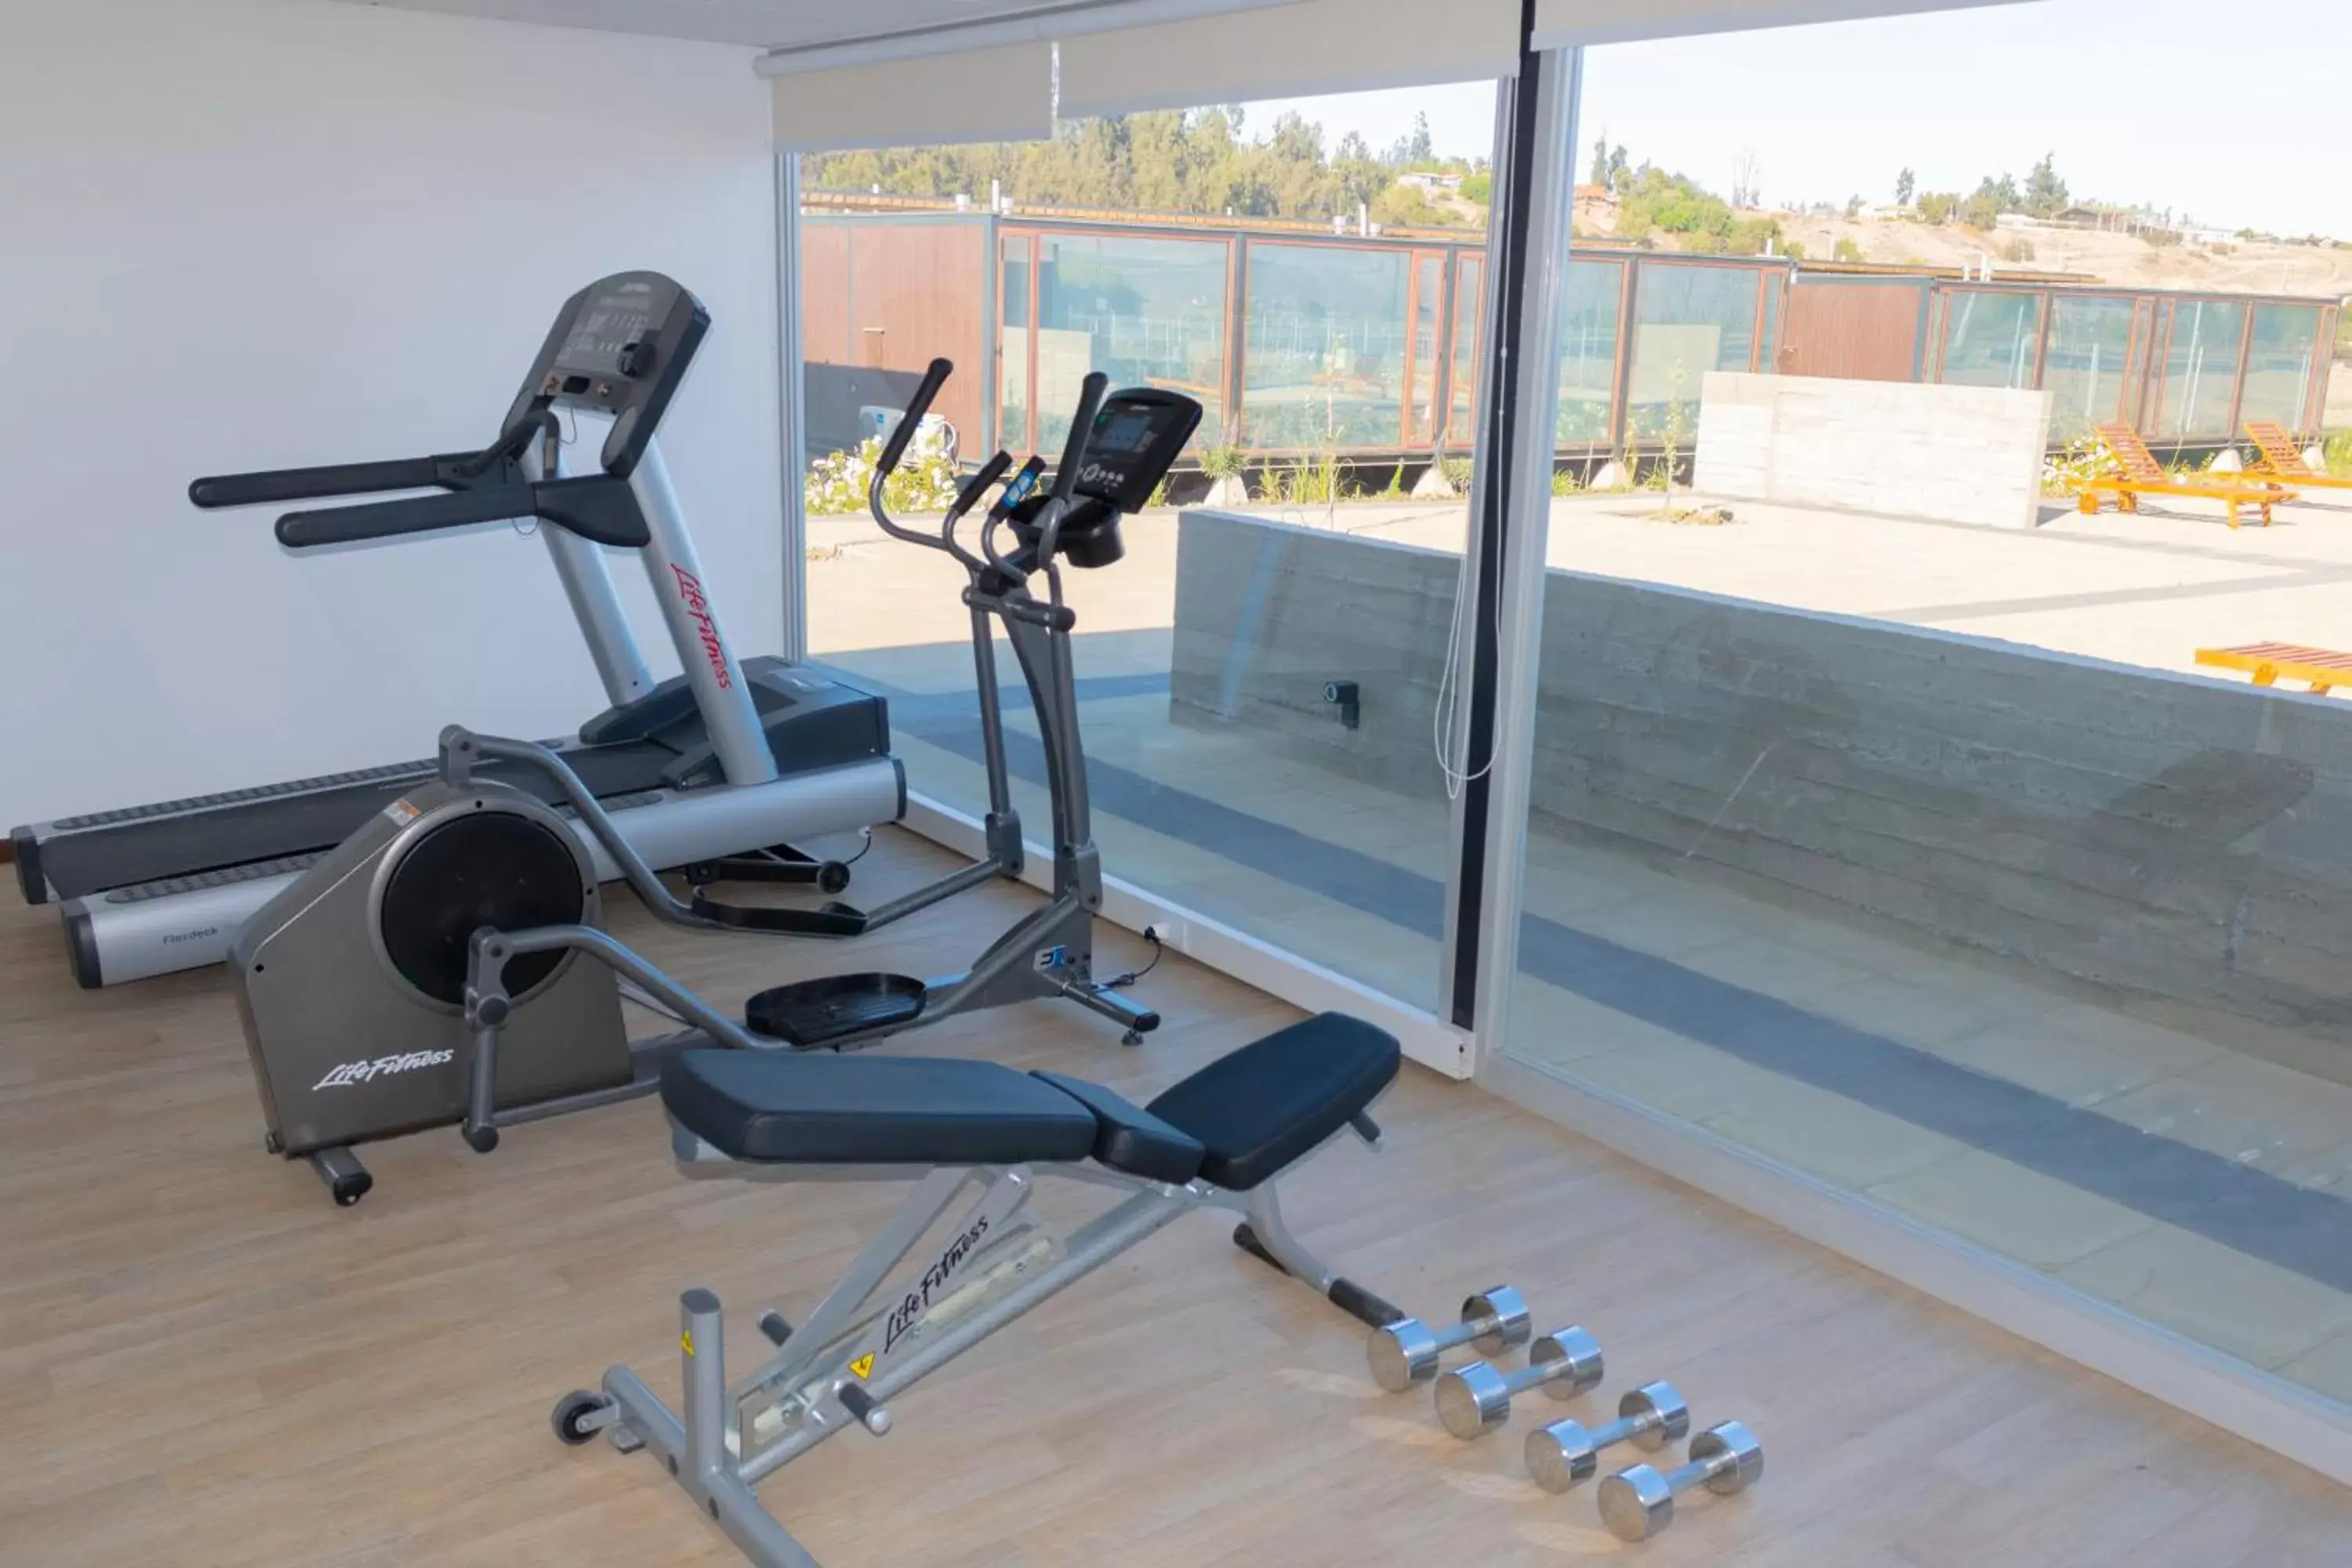 Fitness centre/facilities, Fitness Center/Facilities in Park Inn by Radisson Los Olivos de Vallenar